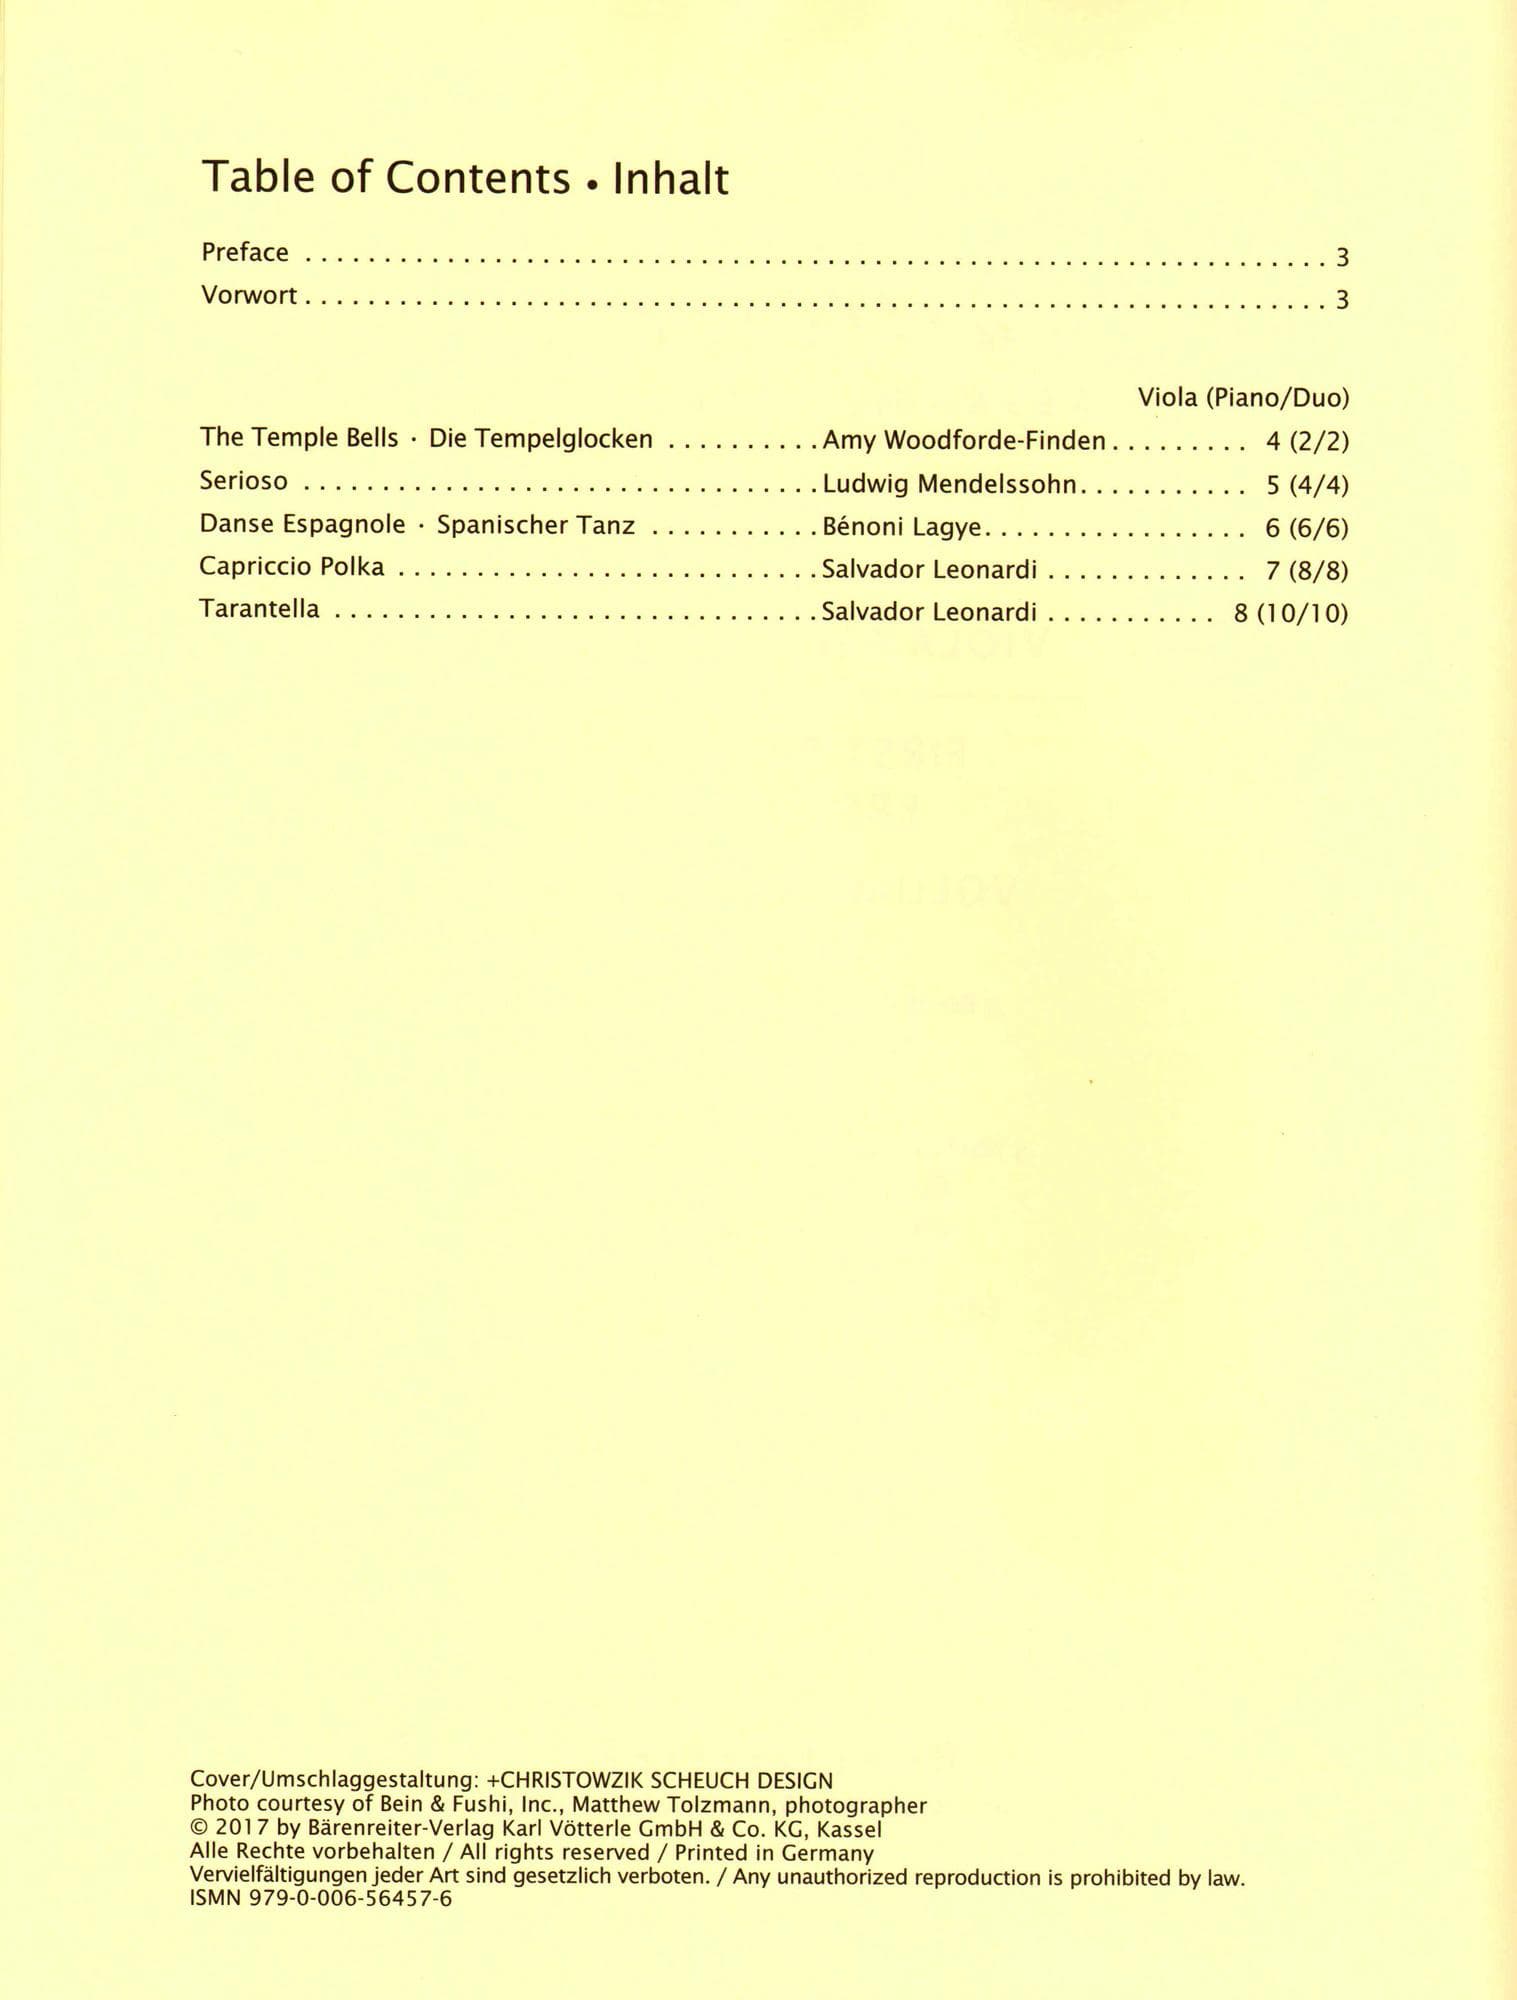 Sassmannshaus Viola Recital Album Volume 4